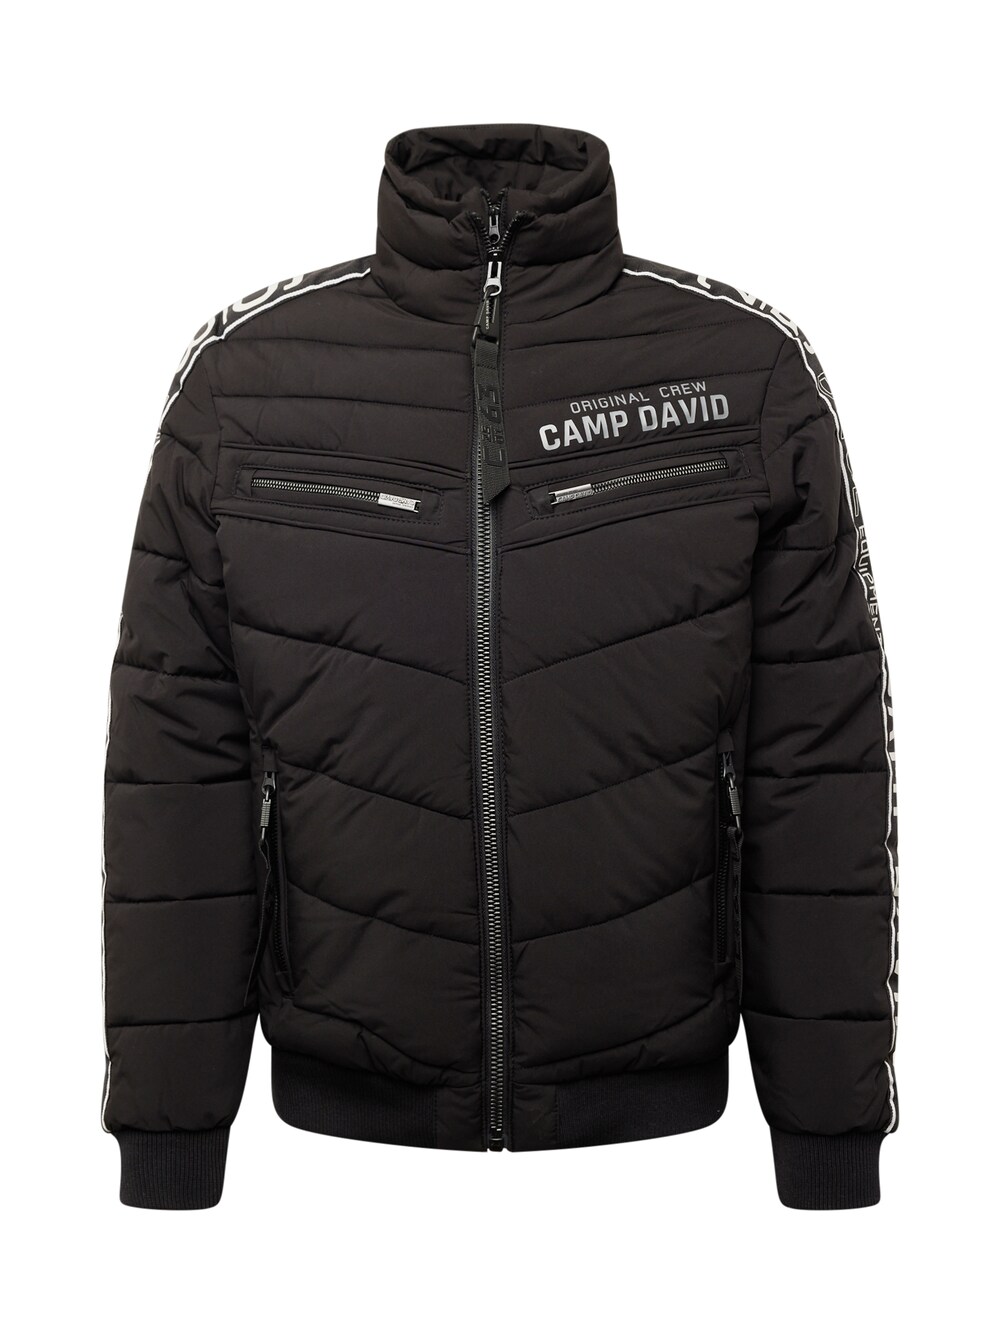 Зимняя куртка CAMP DAVID, черный зажим грудной turbochest camp черный